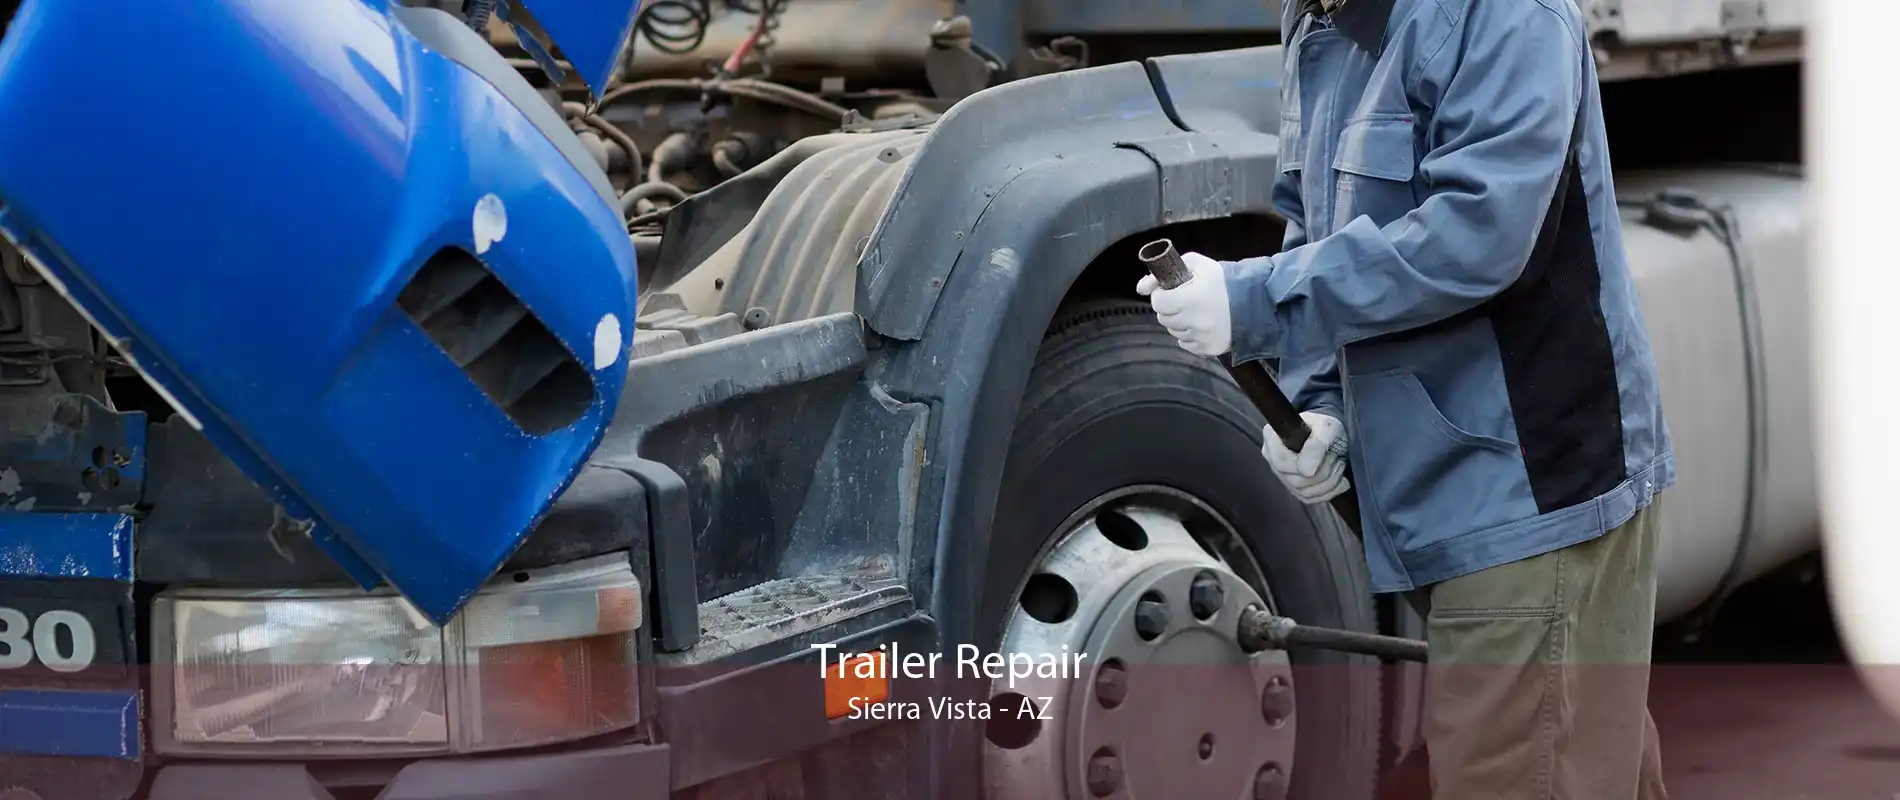 Trailer Repair Sierra Vista - AZ